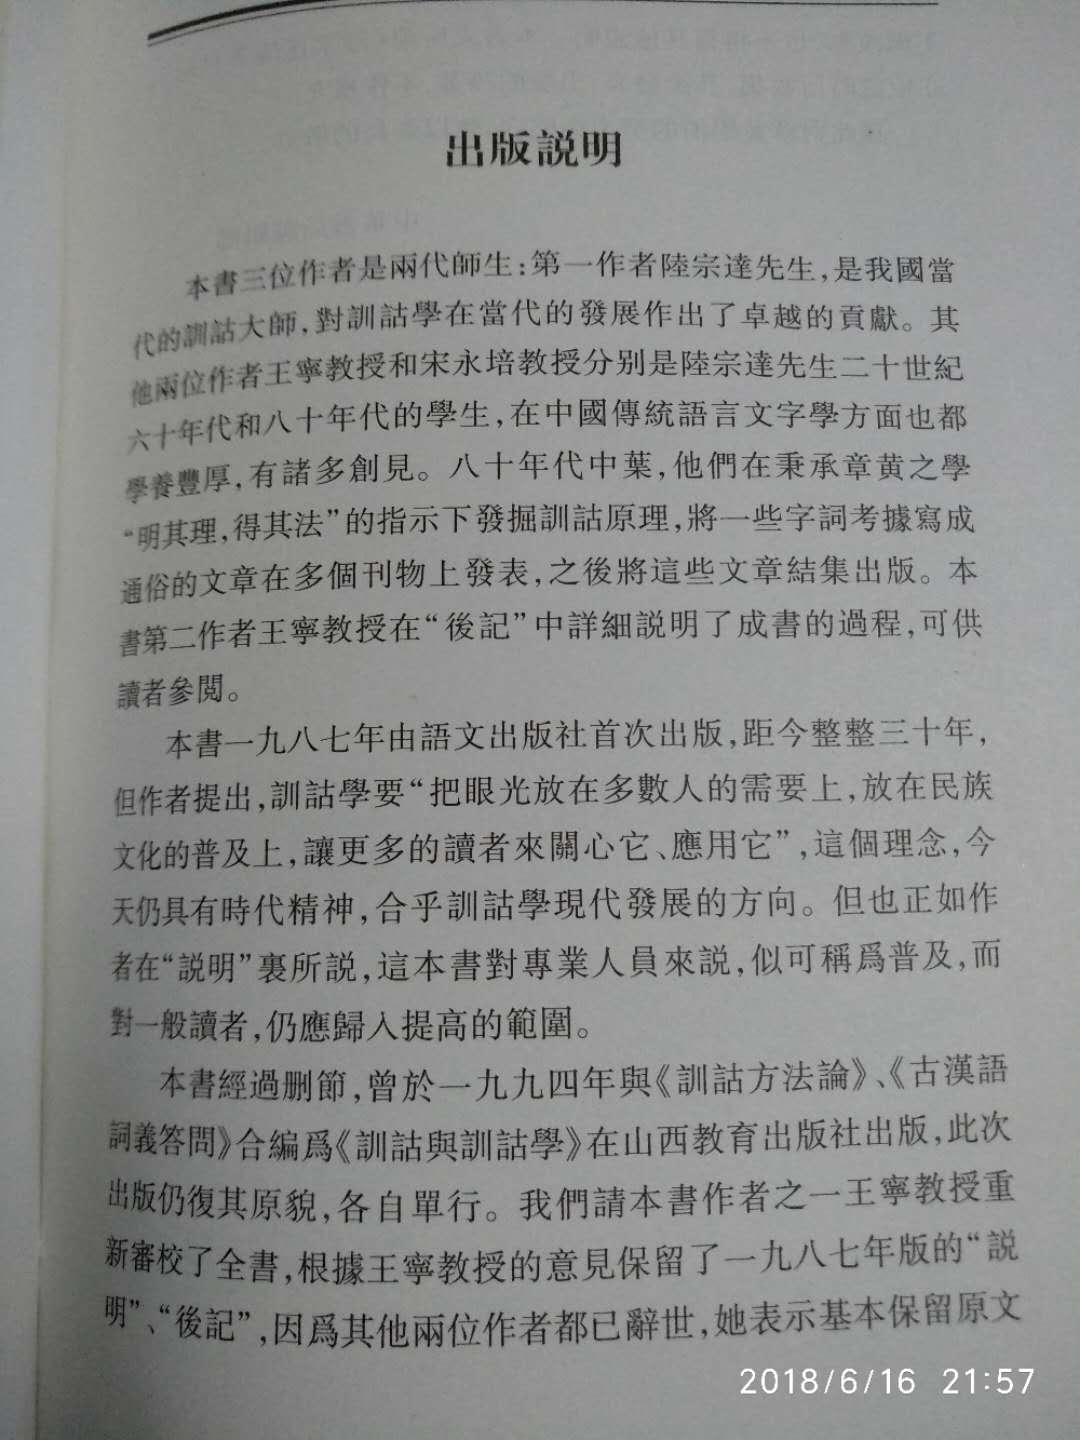 中华书局近期推出的王宁先生著作之一。训诂学的普及读物吧。